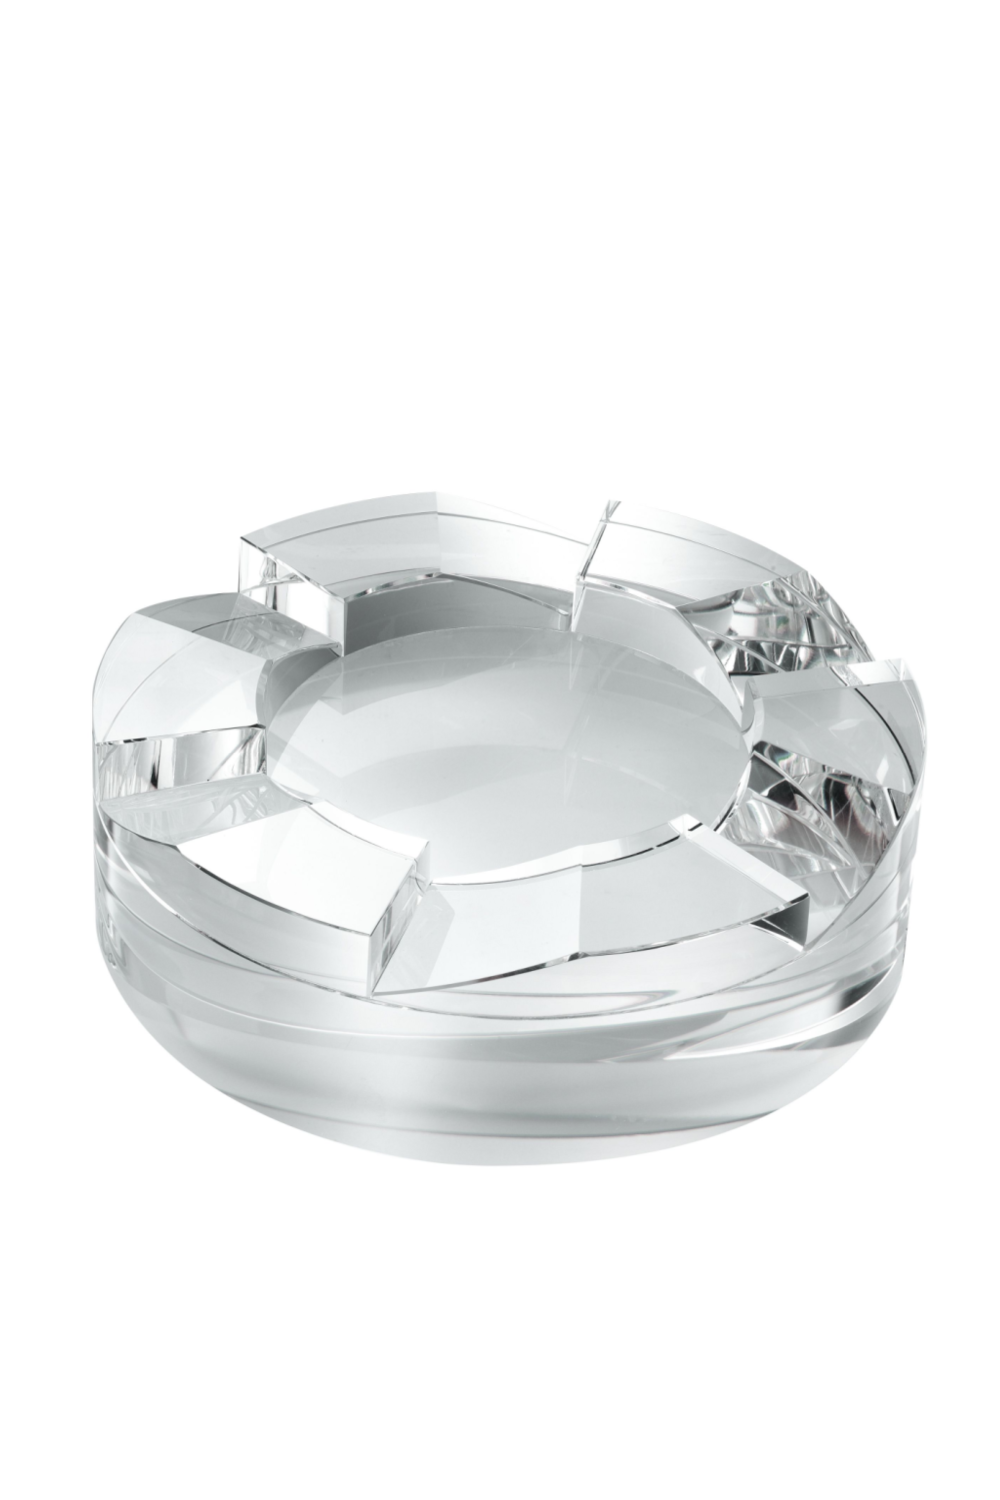 Crystal Glass Bowl | Eichholtz Avedon | OROA